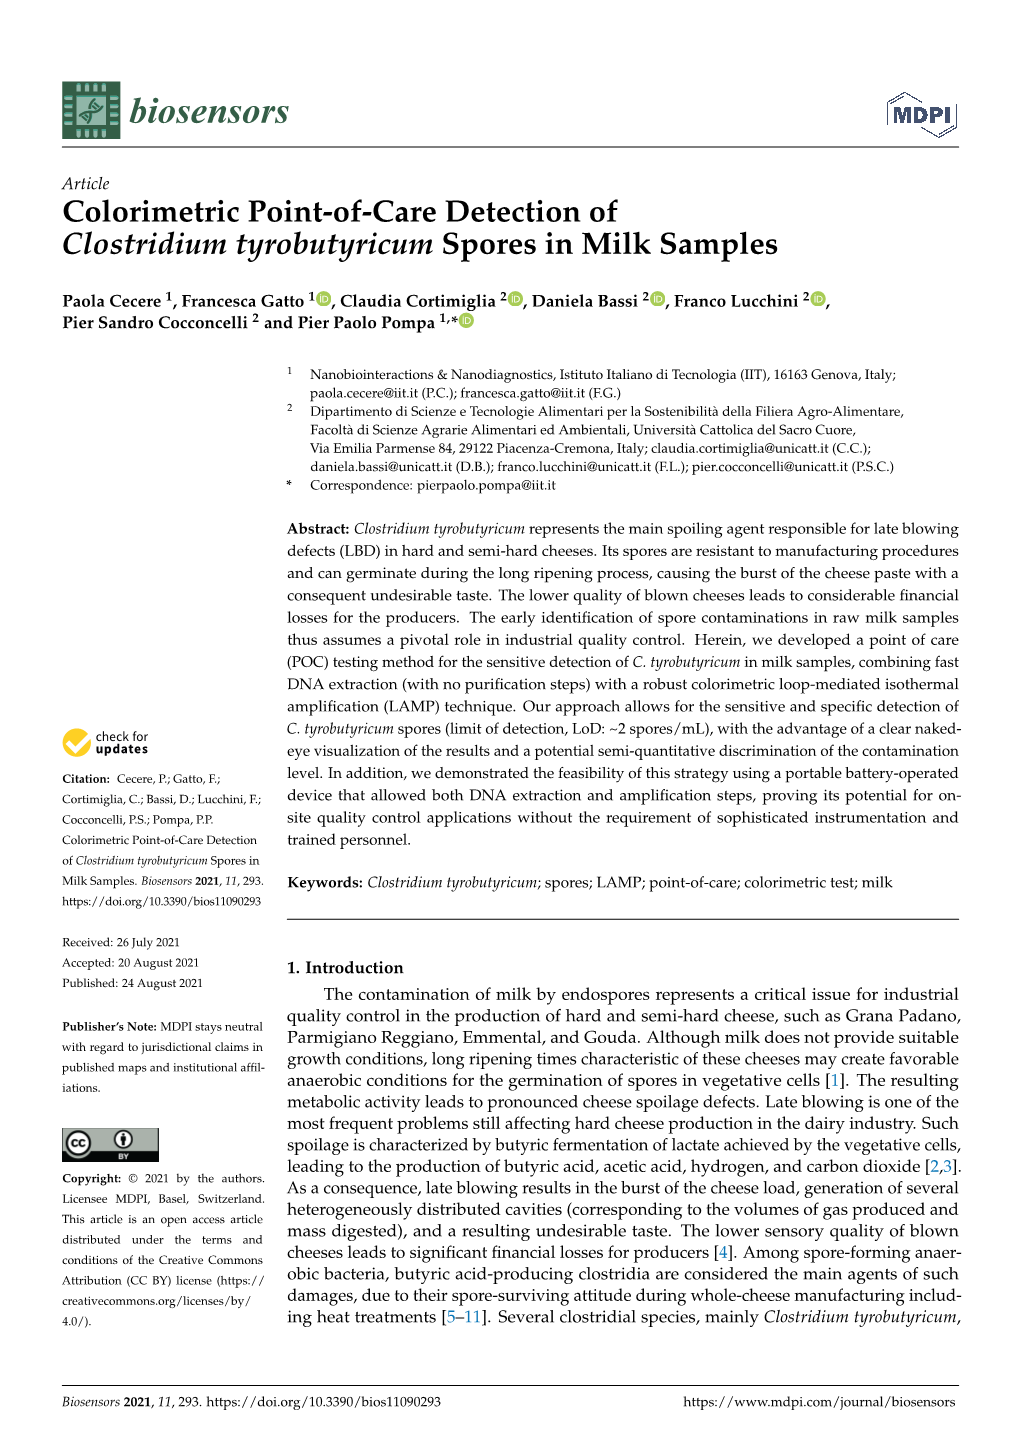 Colorimetric Point-Of-Care Detection of Clostridium Tyrobutyricum Spores in Milk Samples